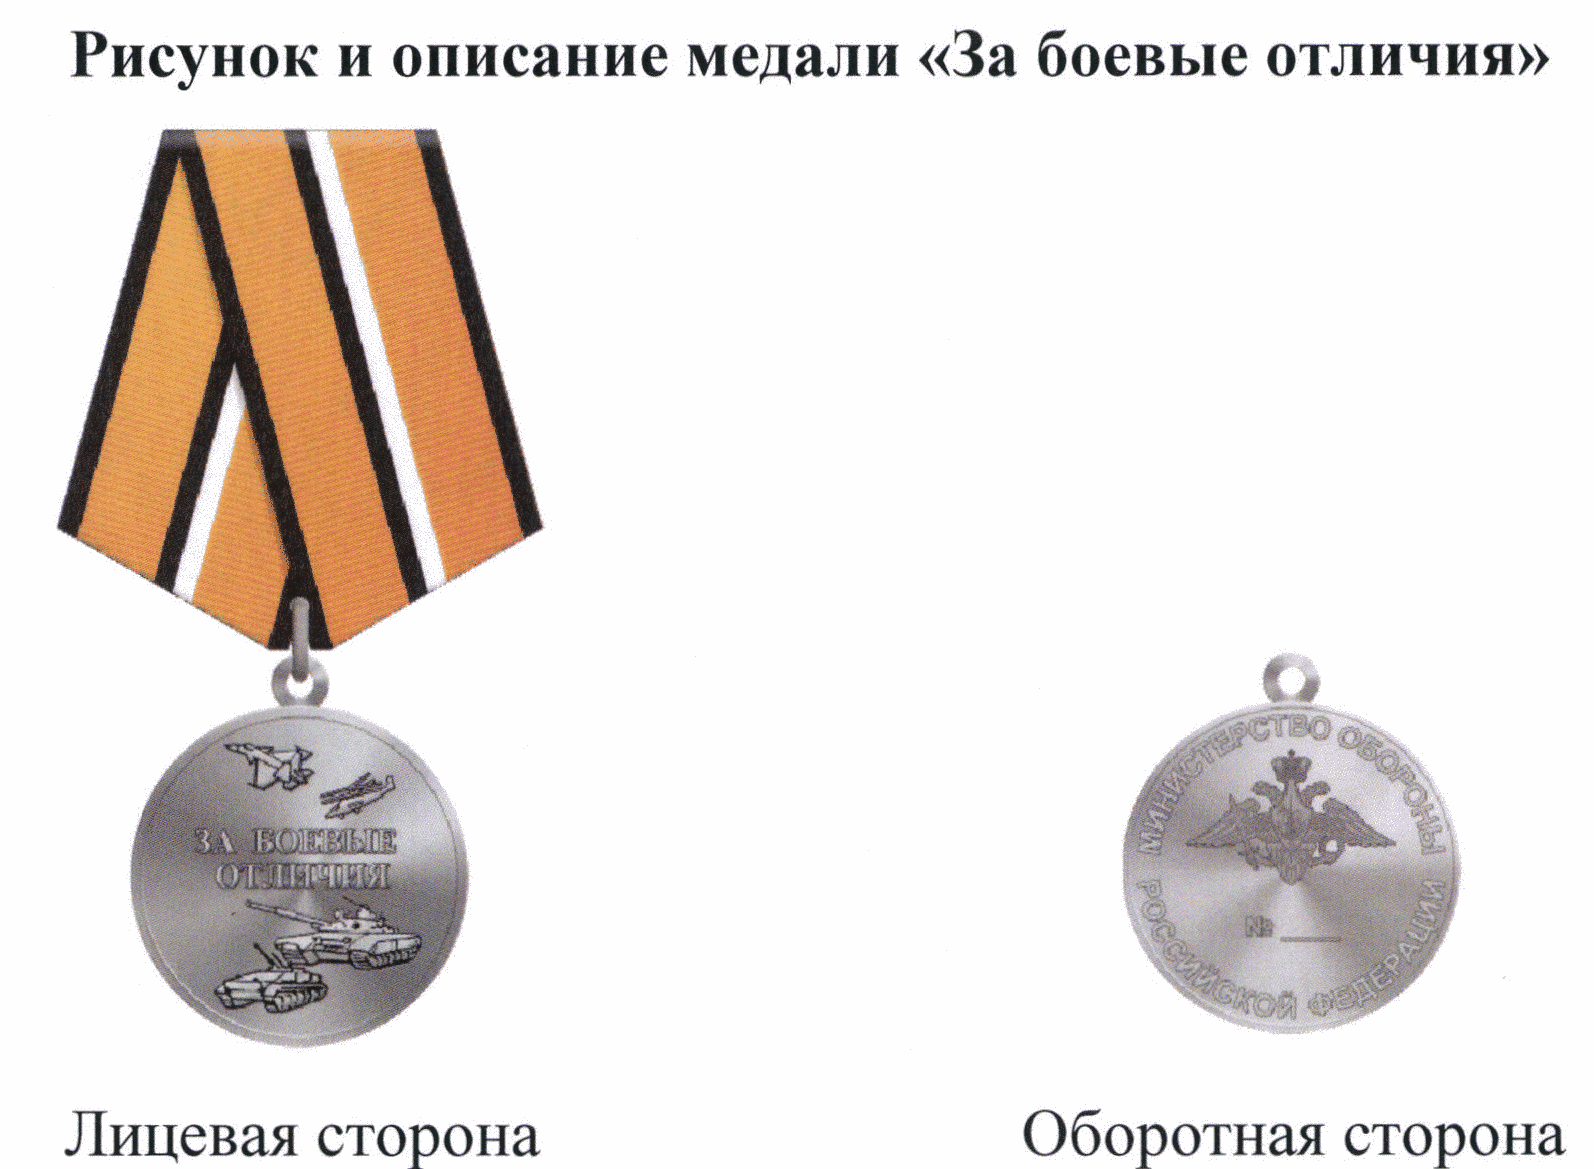 Медаль за боевые отличия что дает. Медаль за боевые отличия МО РФ. Медаль МО России "за боевые отличия". Медаль за боевые отличия номерная. Медаль за боевые отличия 2 степени.